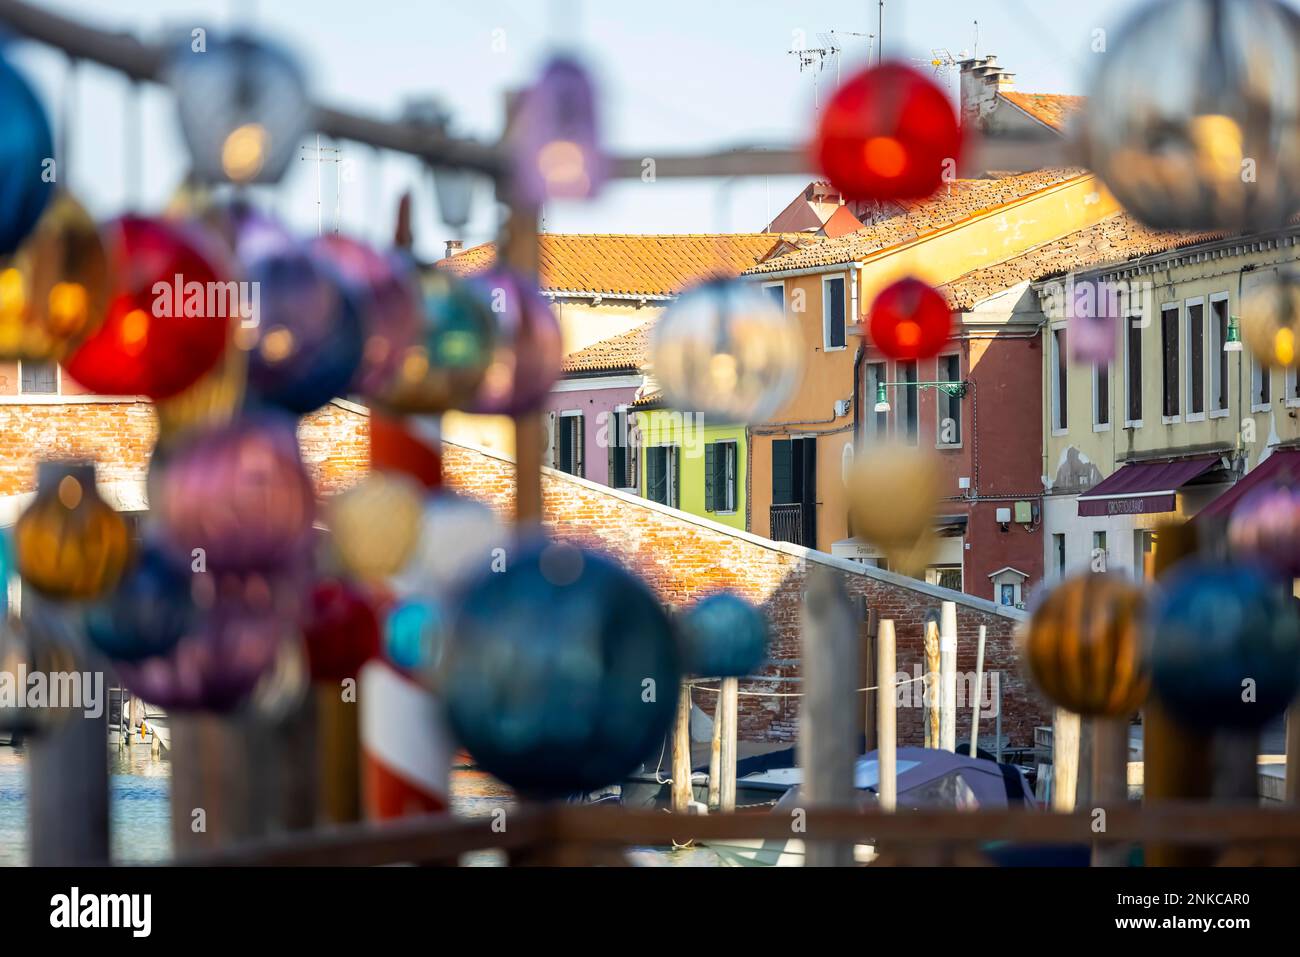 L'art du verre est suspendu dans les ruelles en face des maisons colorées, l'île de Murano, Venise, Italie Banque D'Images